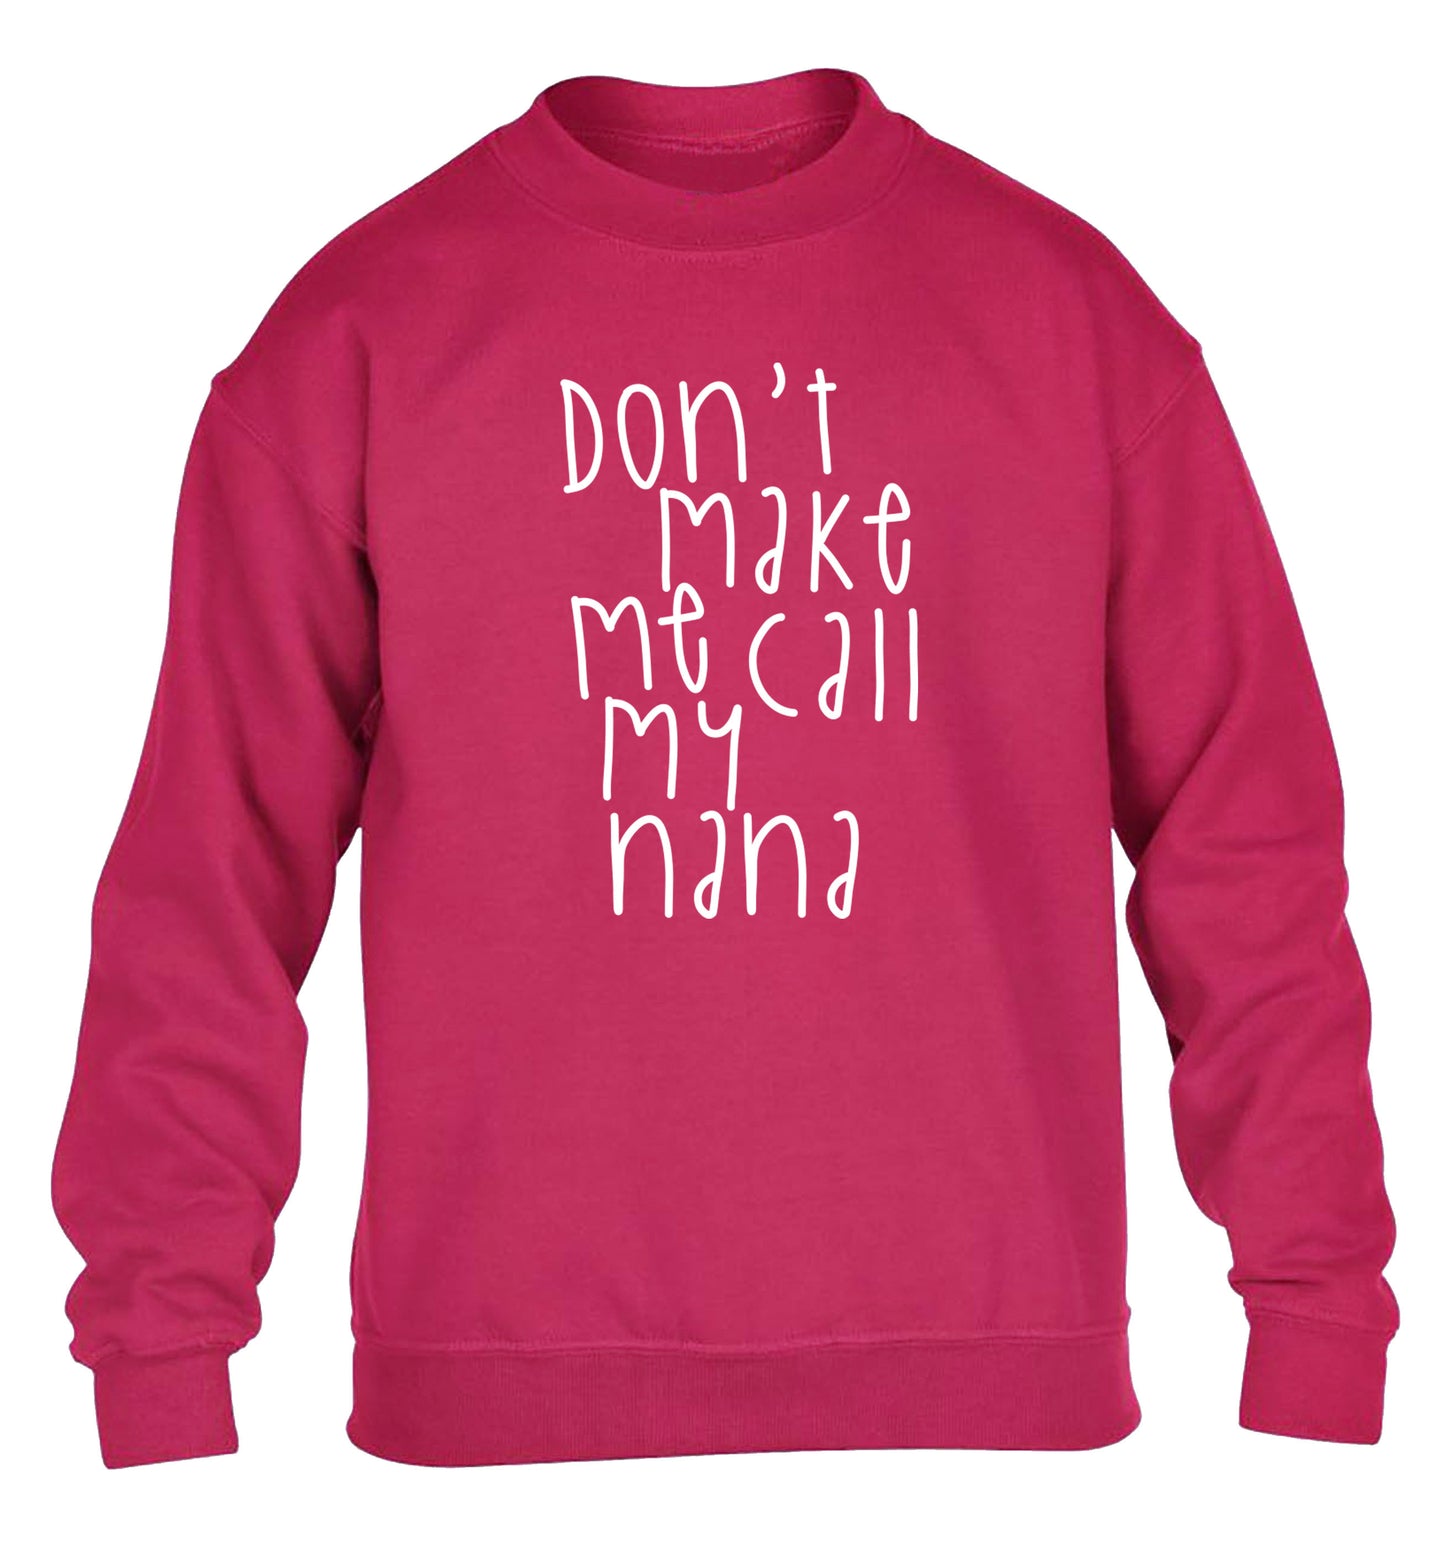 Don't make me call my nana children's pink sweater 12-14 Years